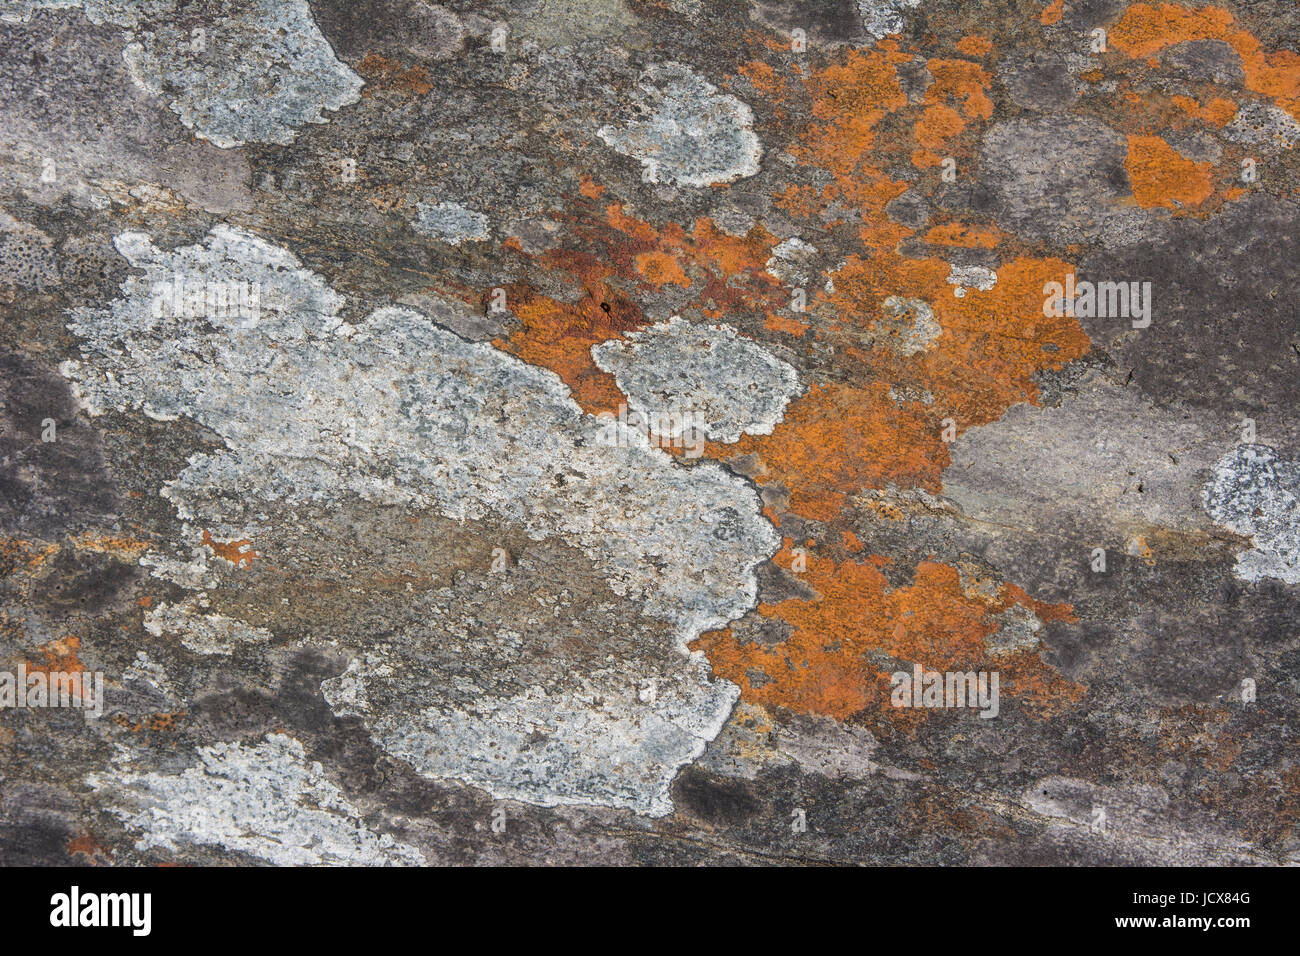 Rock et de lichen et de textures pour les images d'arrière-plan Banque D'Images